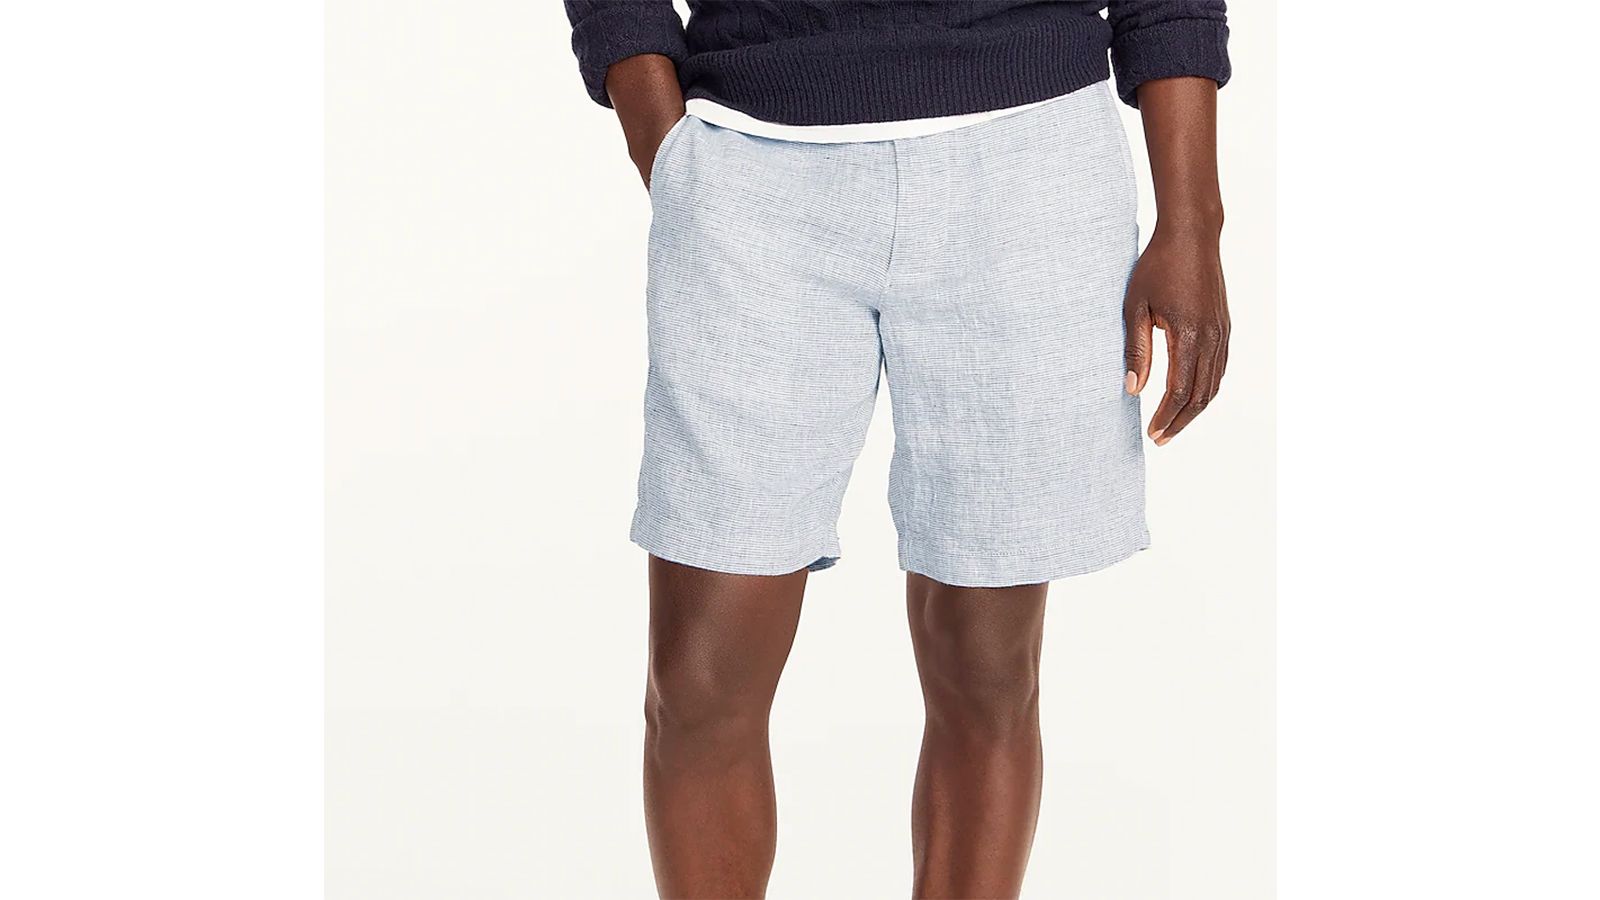 The Best Shorts for Men: 19 Stylish Picks For Summer